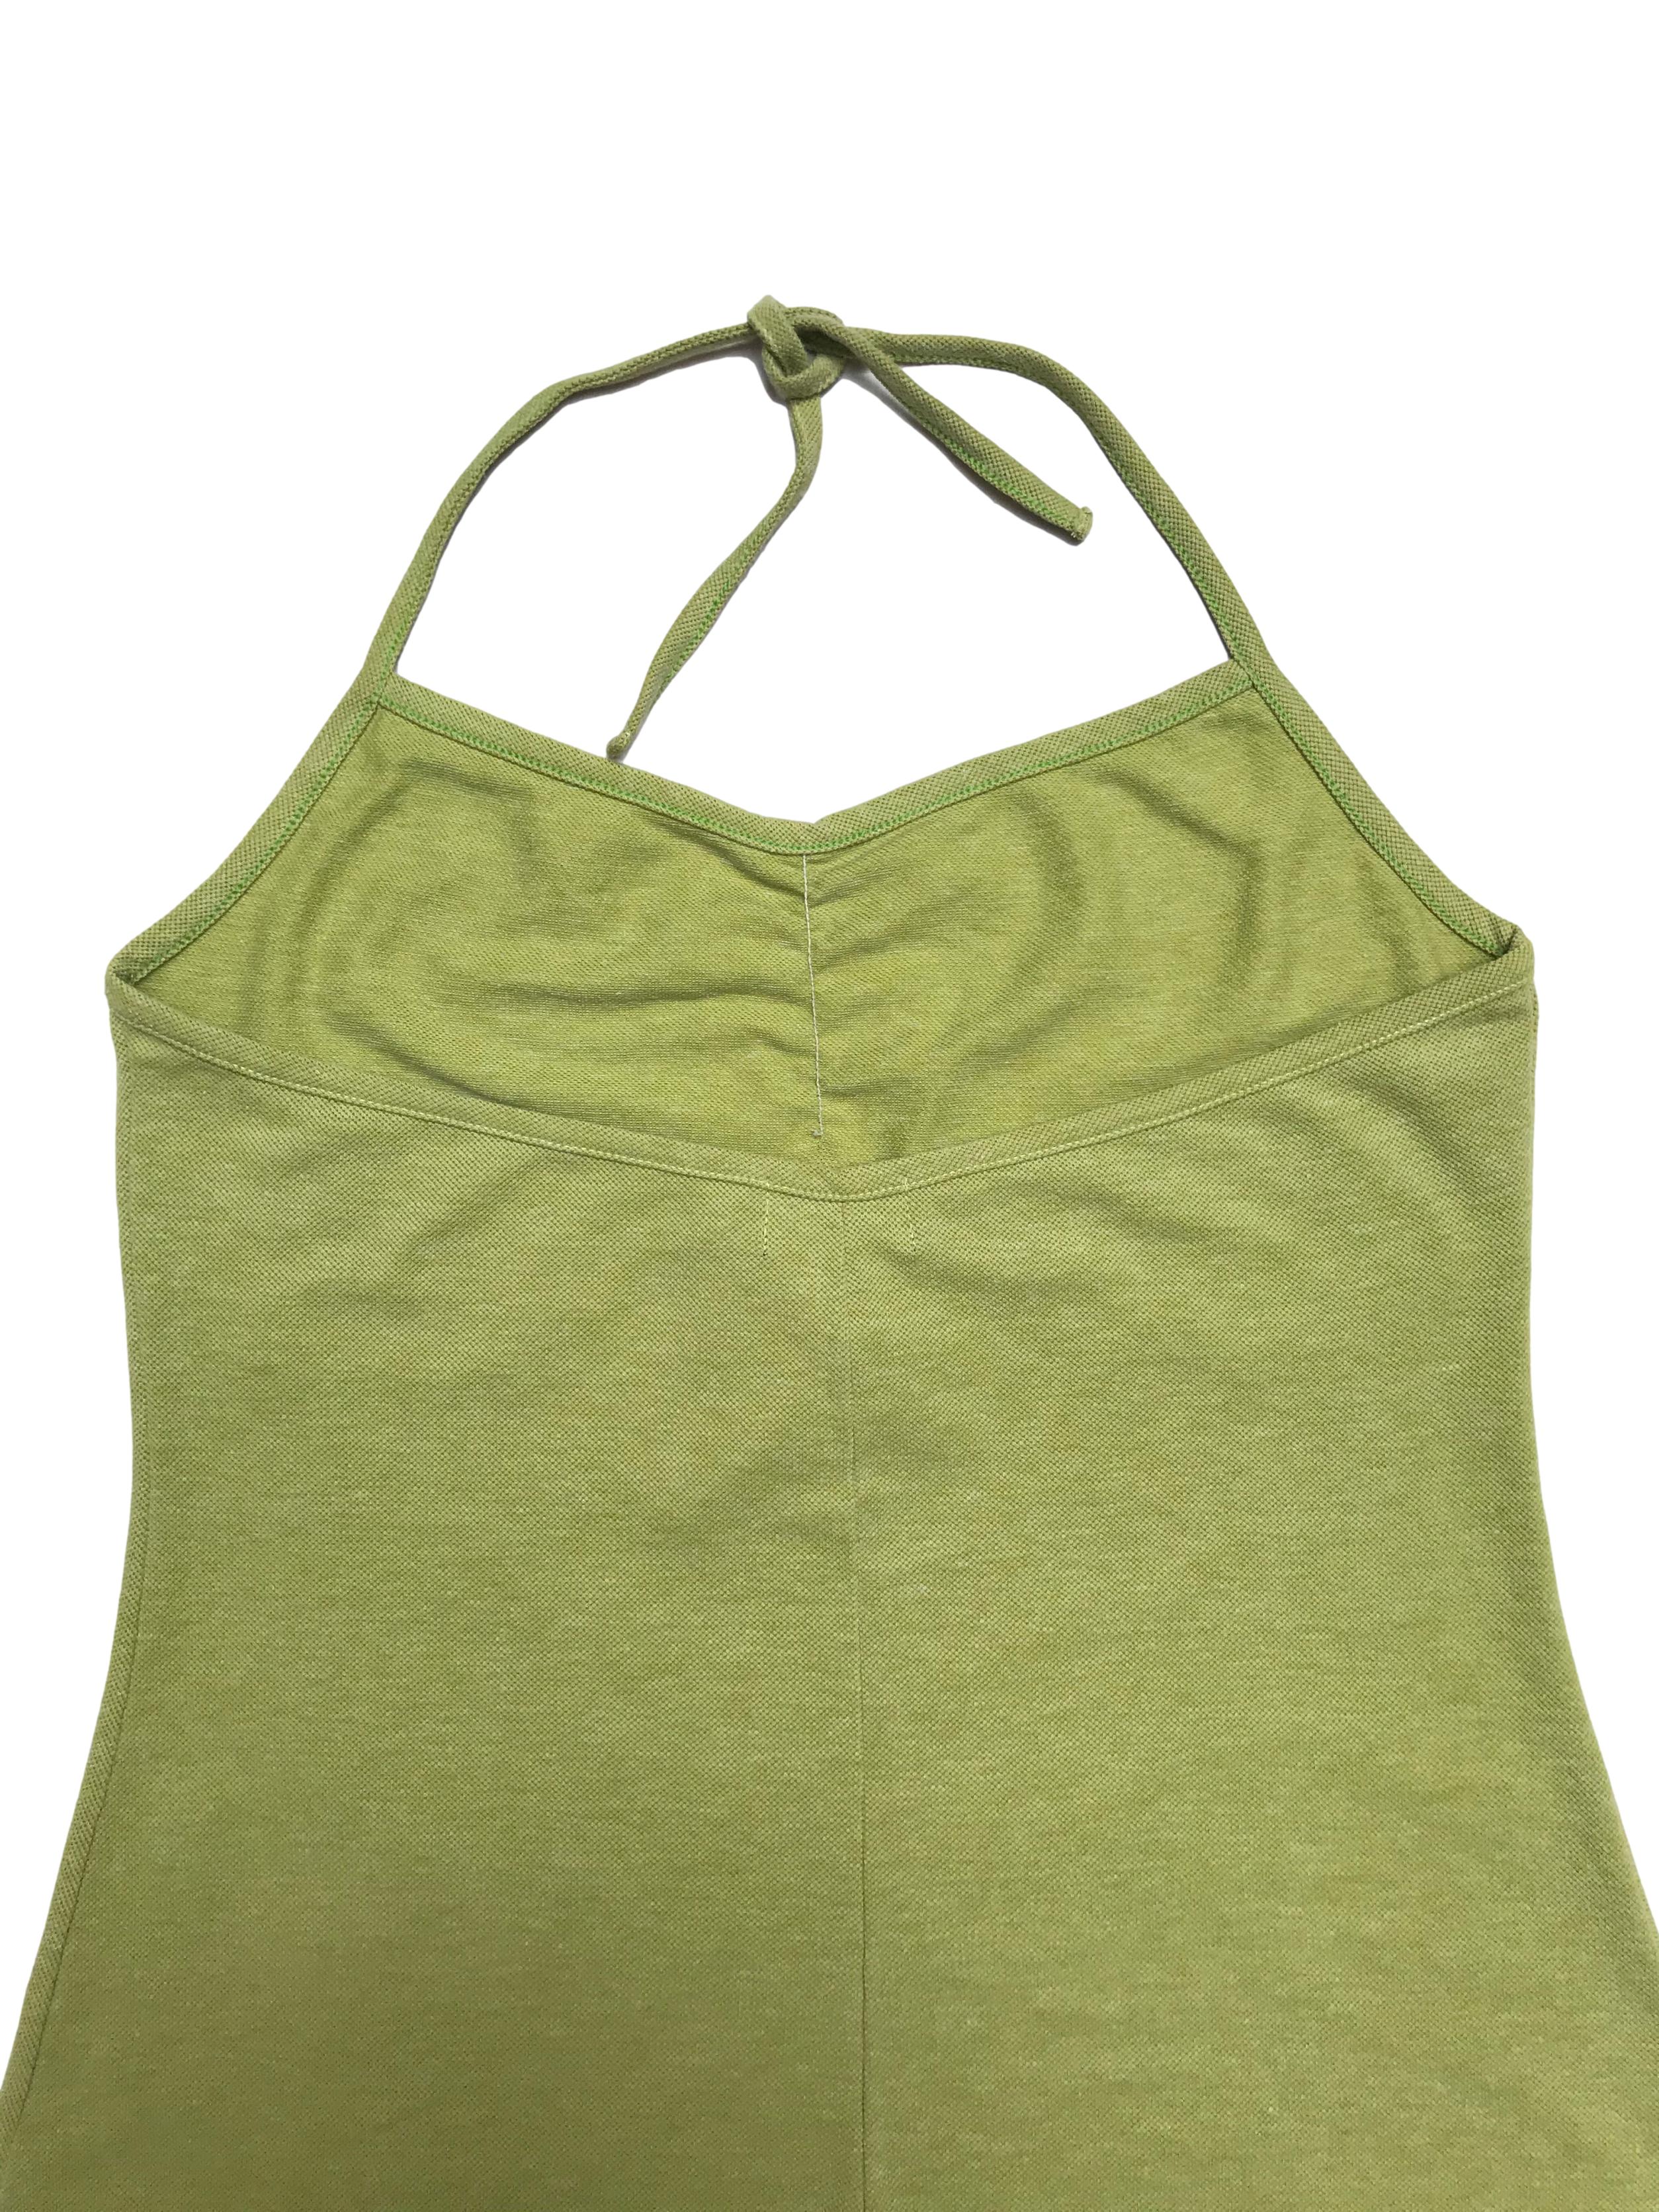 Vestido Sabz verde lima en algodón piqué, cuello halter y corte en A. Largo desde sisa 62cm